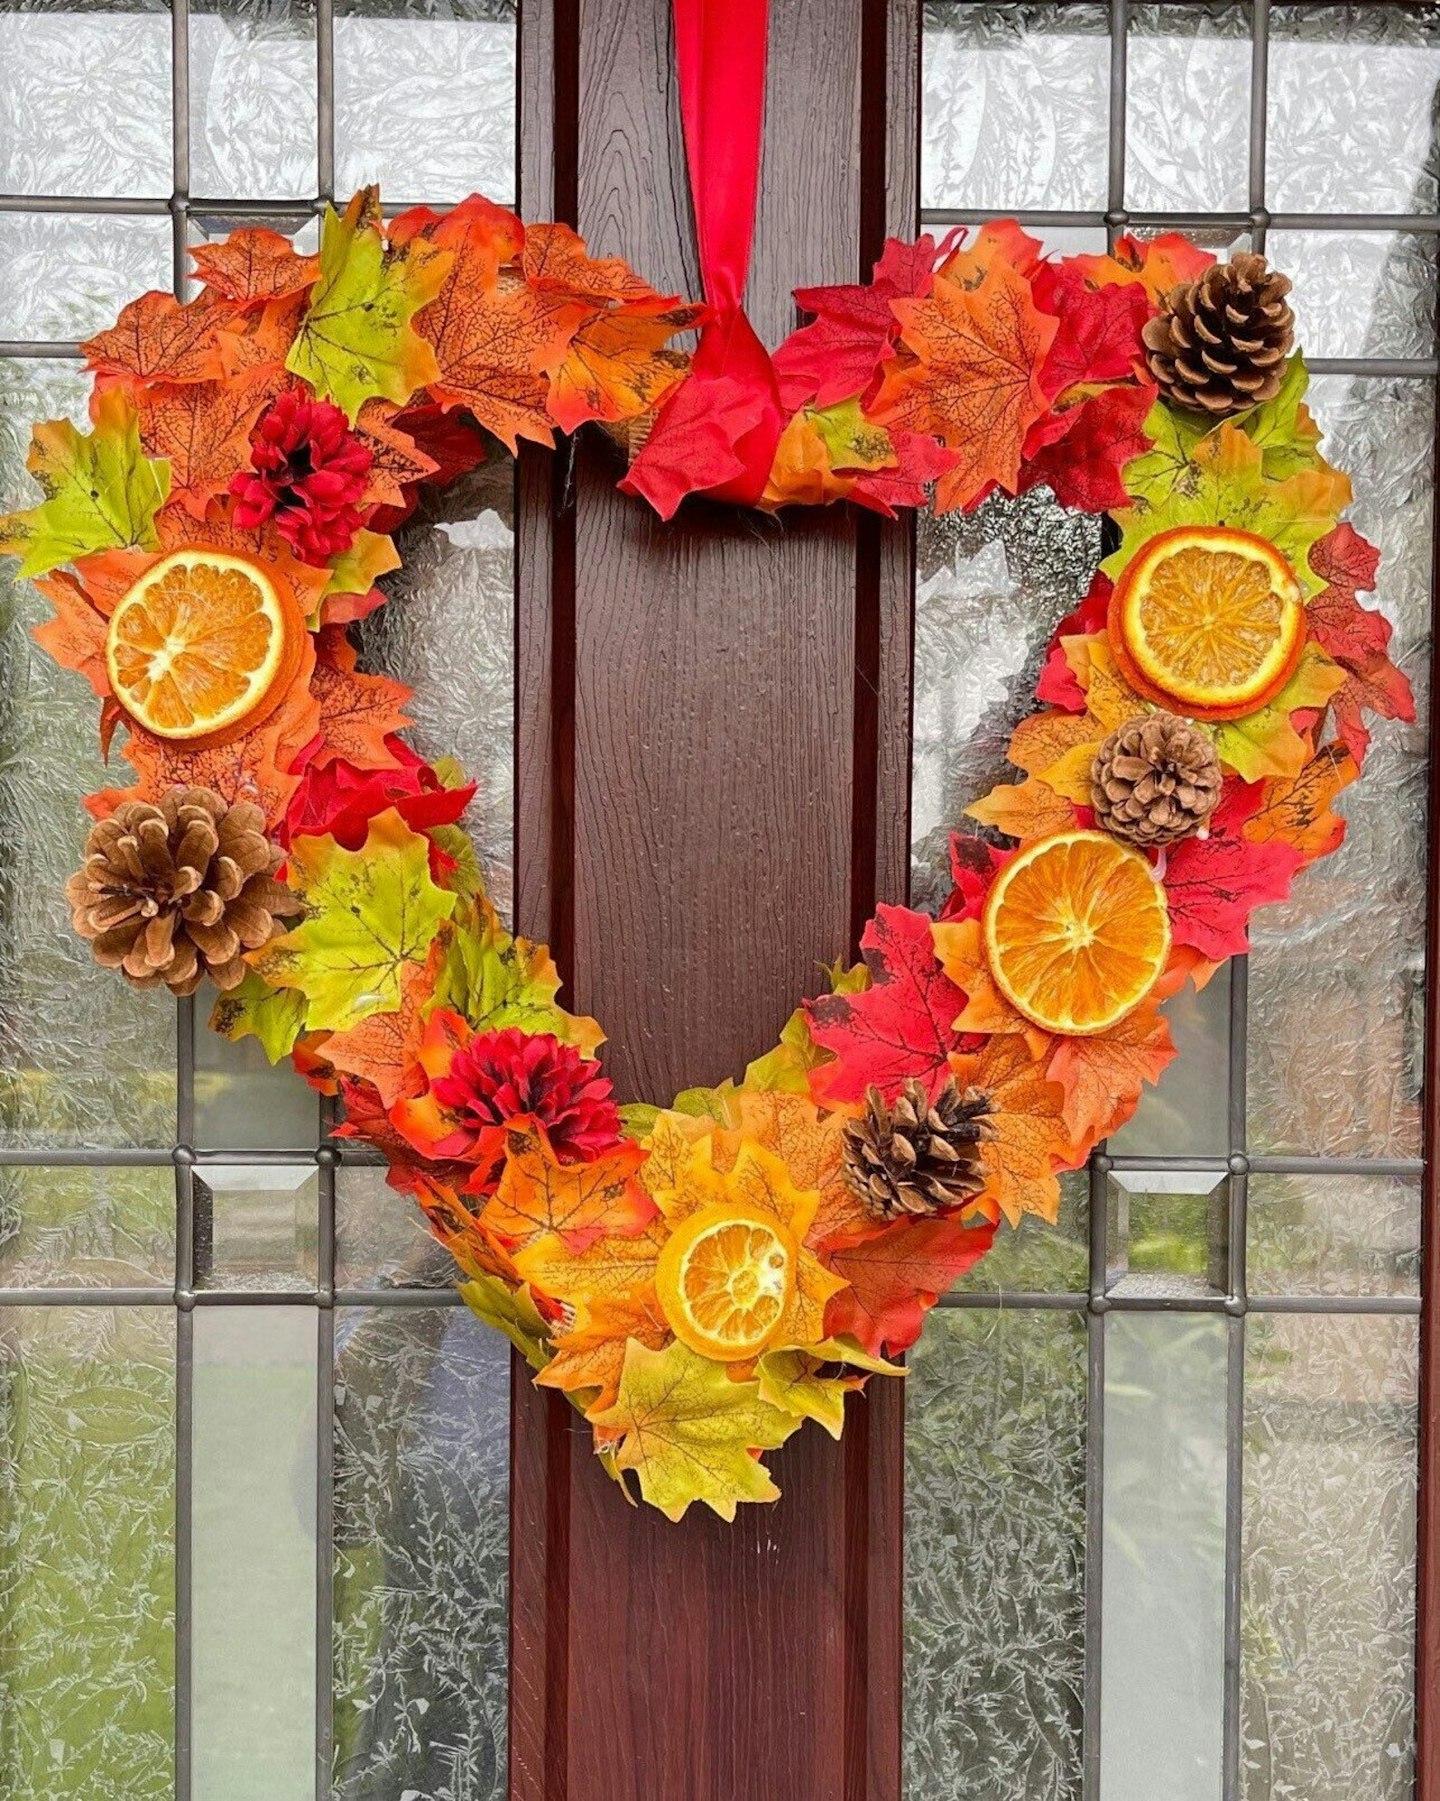 Autumn festival wicker heart wreath